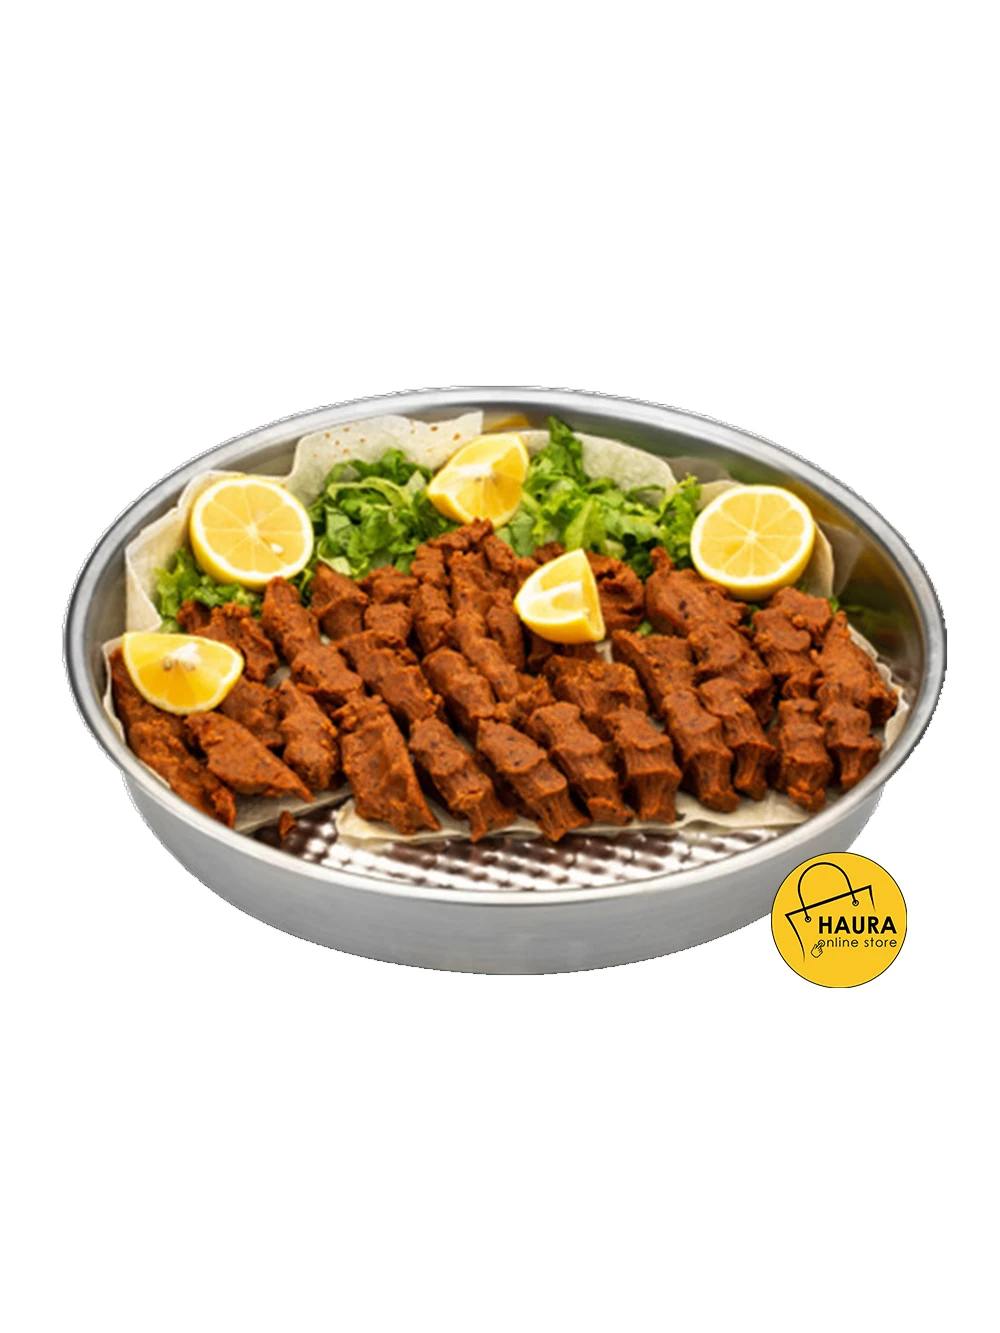 التقليدية التركية الخاصة الخام كرات اللحم نيدر صينية الفولاذ المقاوم للصدأ المعادن 5 أحجام مختلفة سميكة جودة المنتج أدوات المطبخ